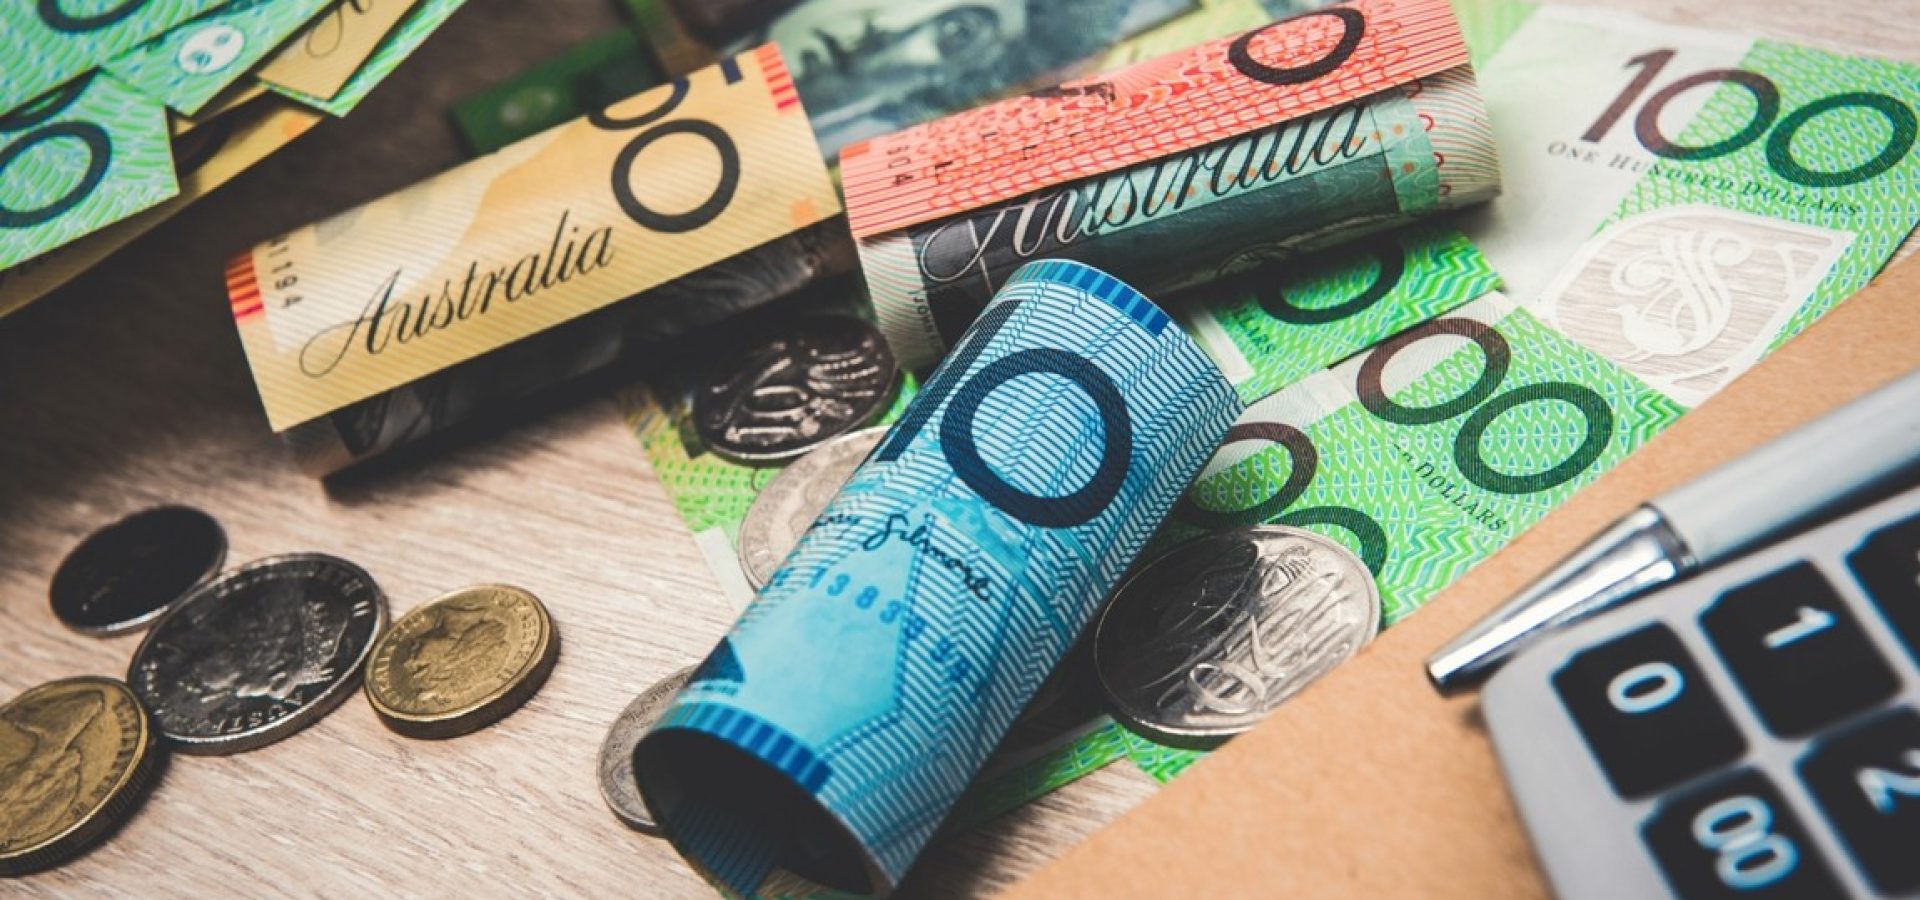 Australian and New Zealand dollars struggled on Monday